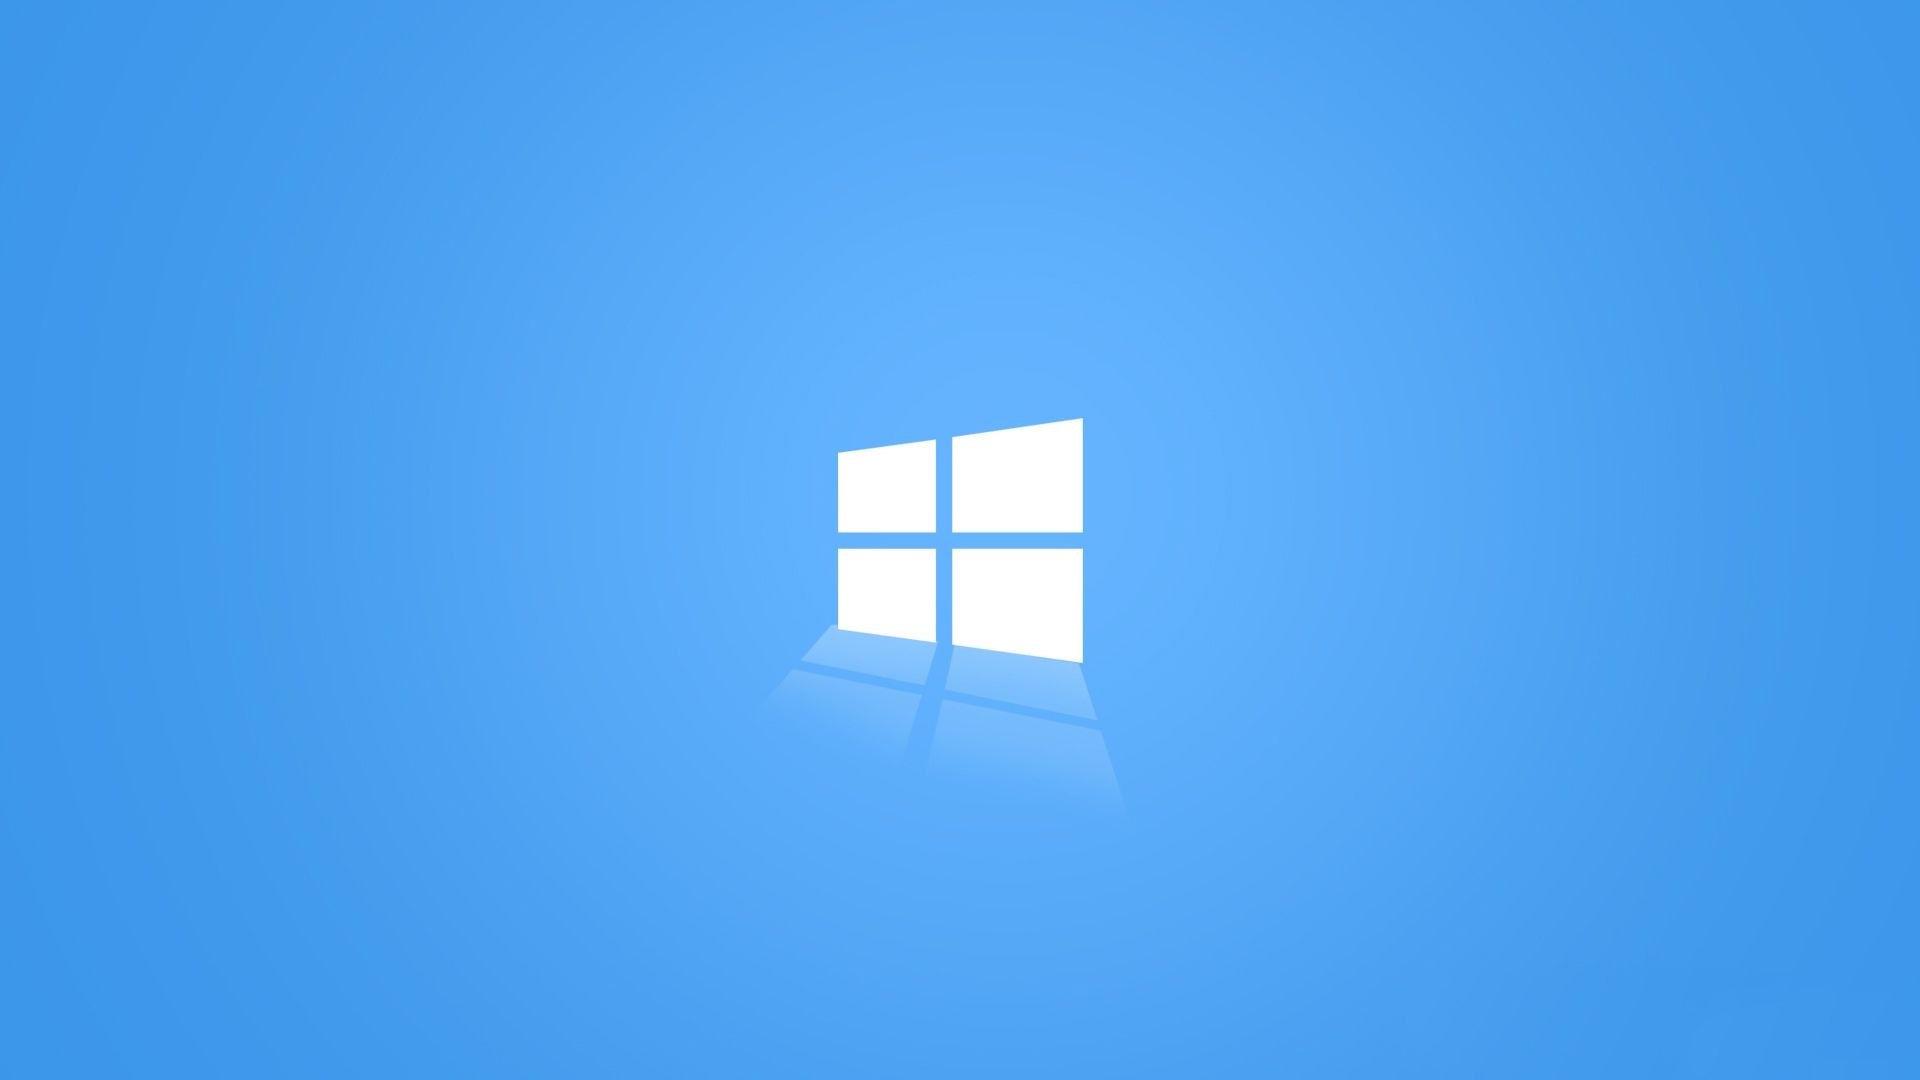 The Light Blue Windows 10 Wallpaper 10 logo HD 1920x1080 Wallpaper